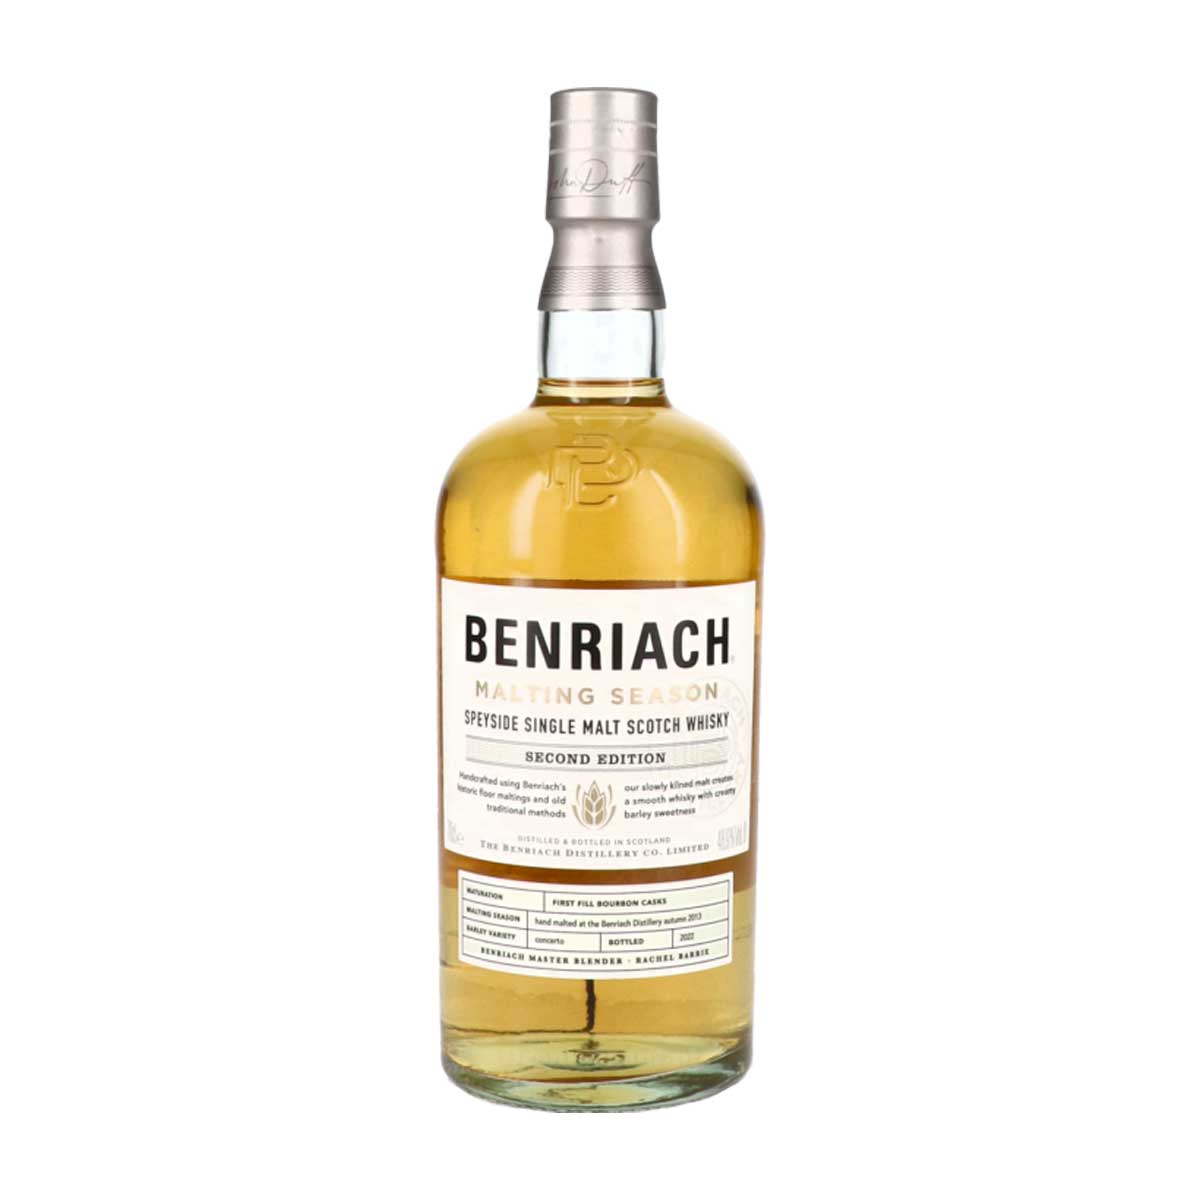 TAG Liquor Stores Canada Delivery-Benriach Malting Season 2nd Edition Scotch Whisky 750ml-spirits-tagliquorstores.com